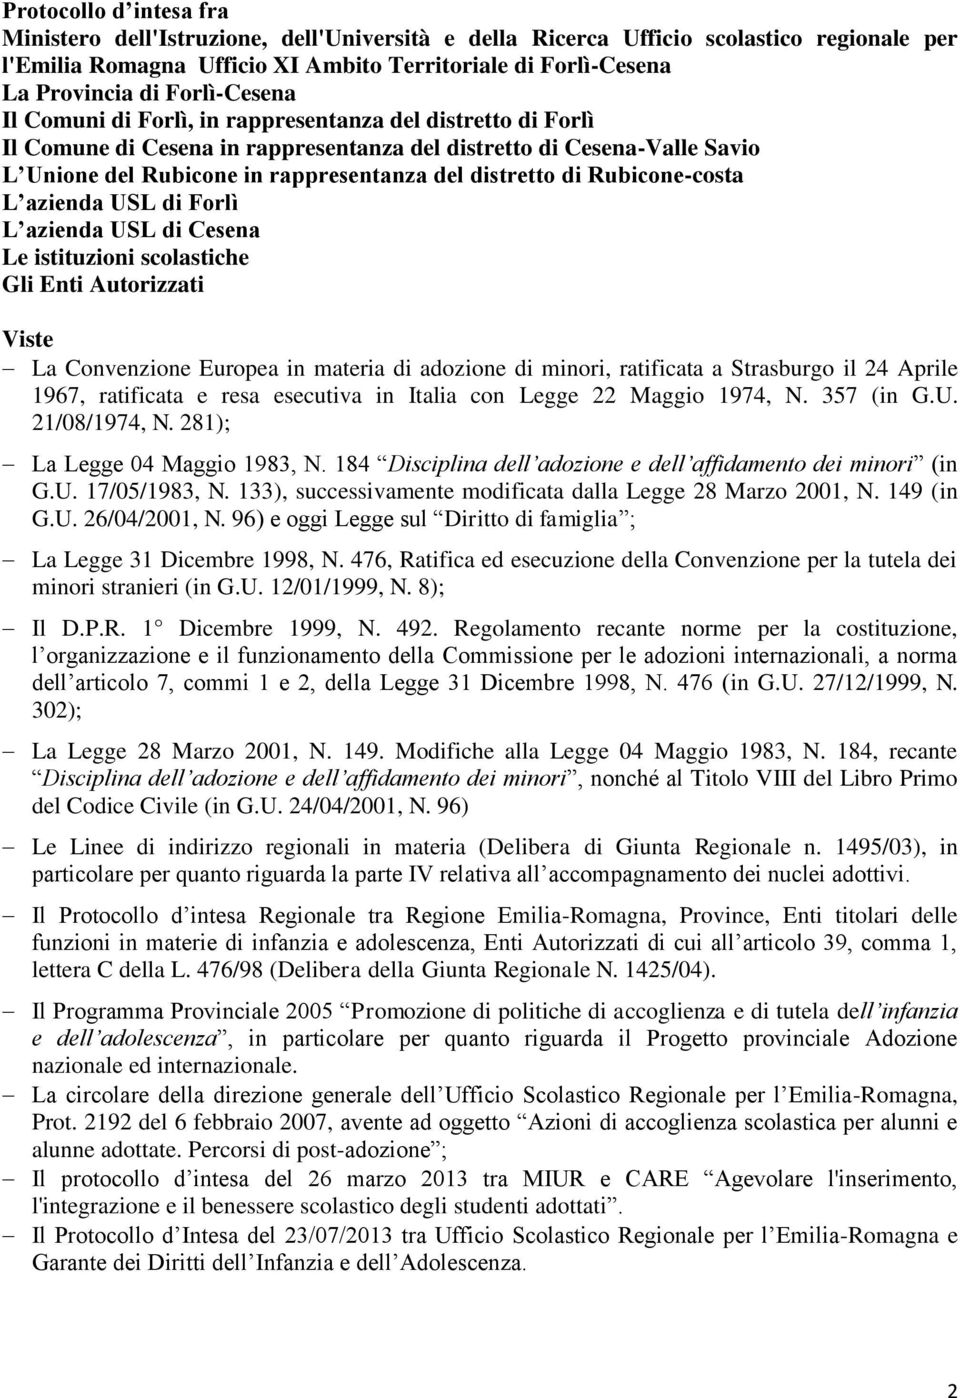 distretto di Rubicone-costa L azienda USL di Forlì L azienda USL di Cesena Le istituzioni scolastiche Gli Enti Autorizzati Viste La Convenzione Europea in materia di adozione di minori, ratificata a